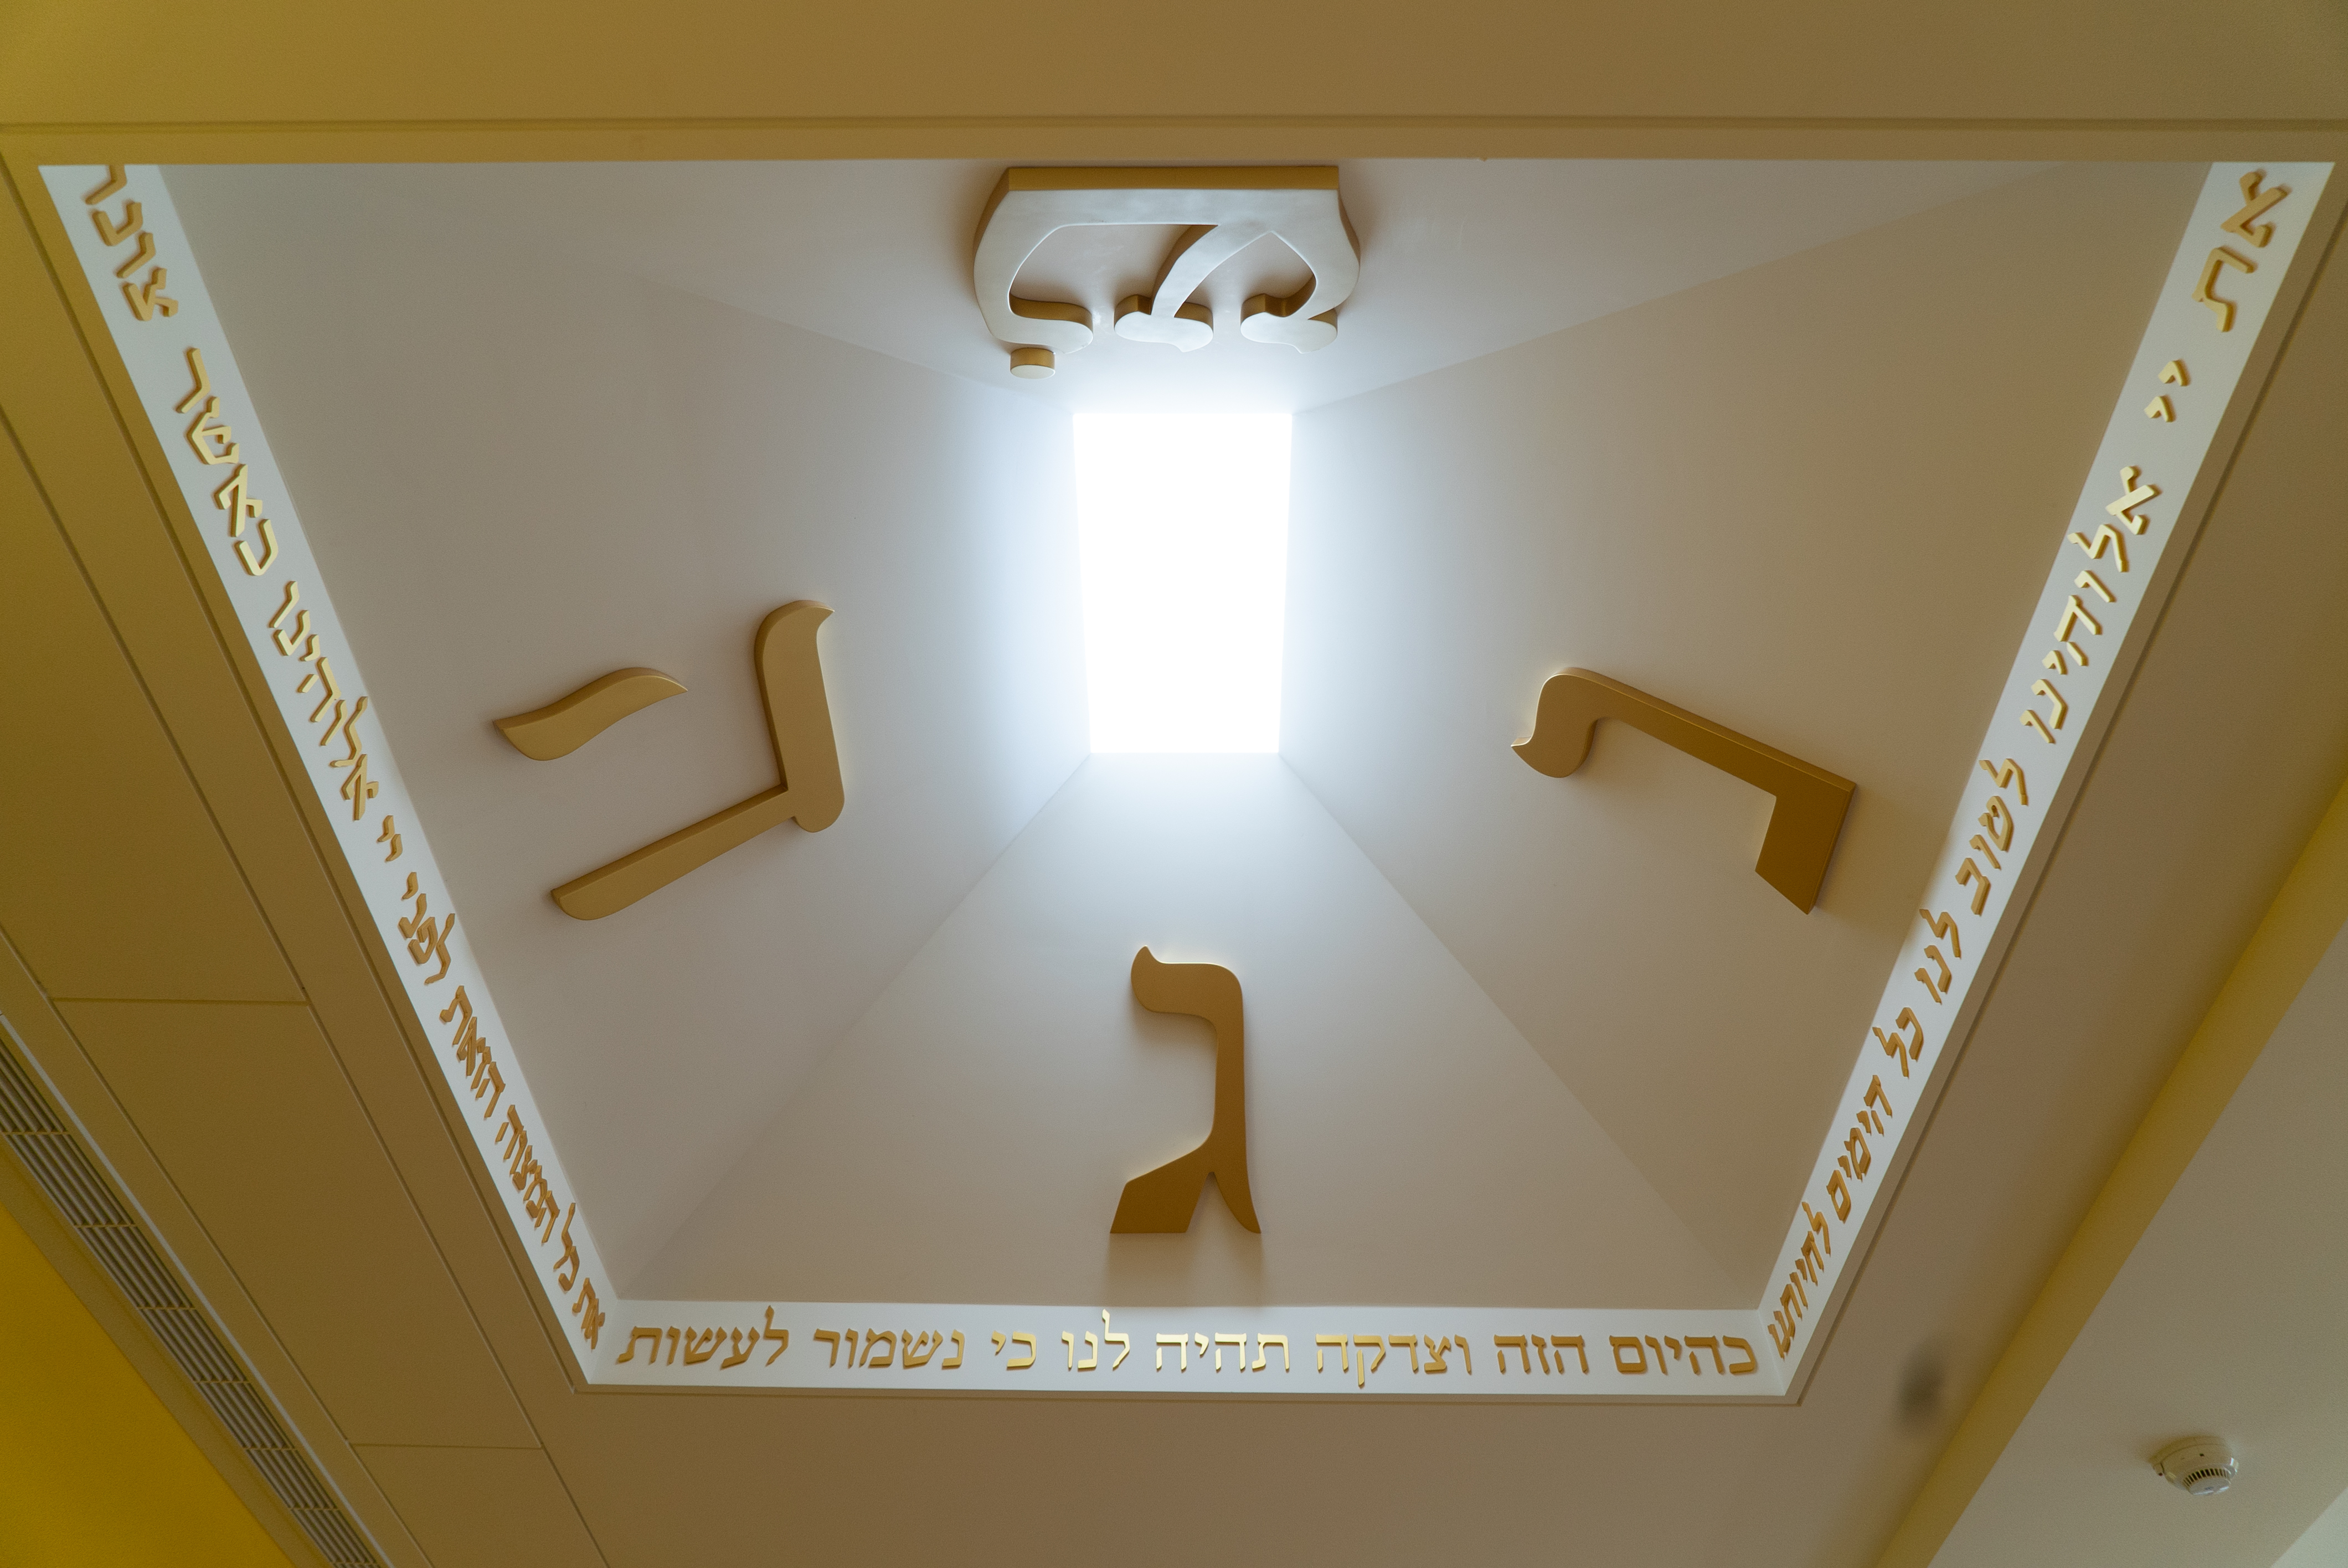 猶太會堂天花板 (關鳳珊攝影)